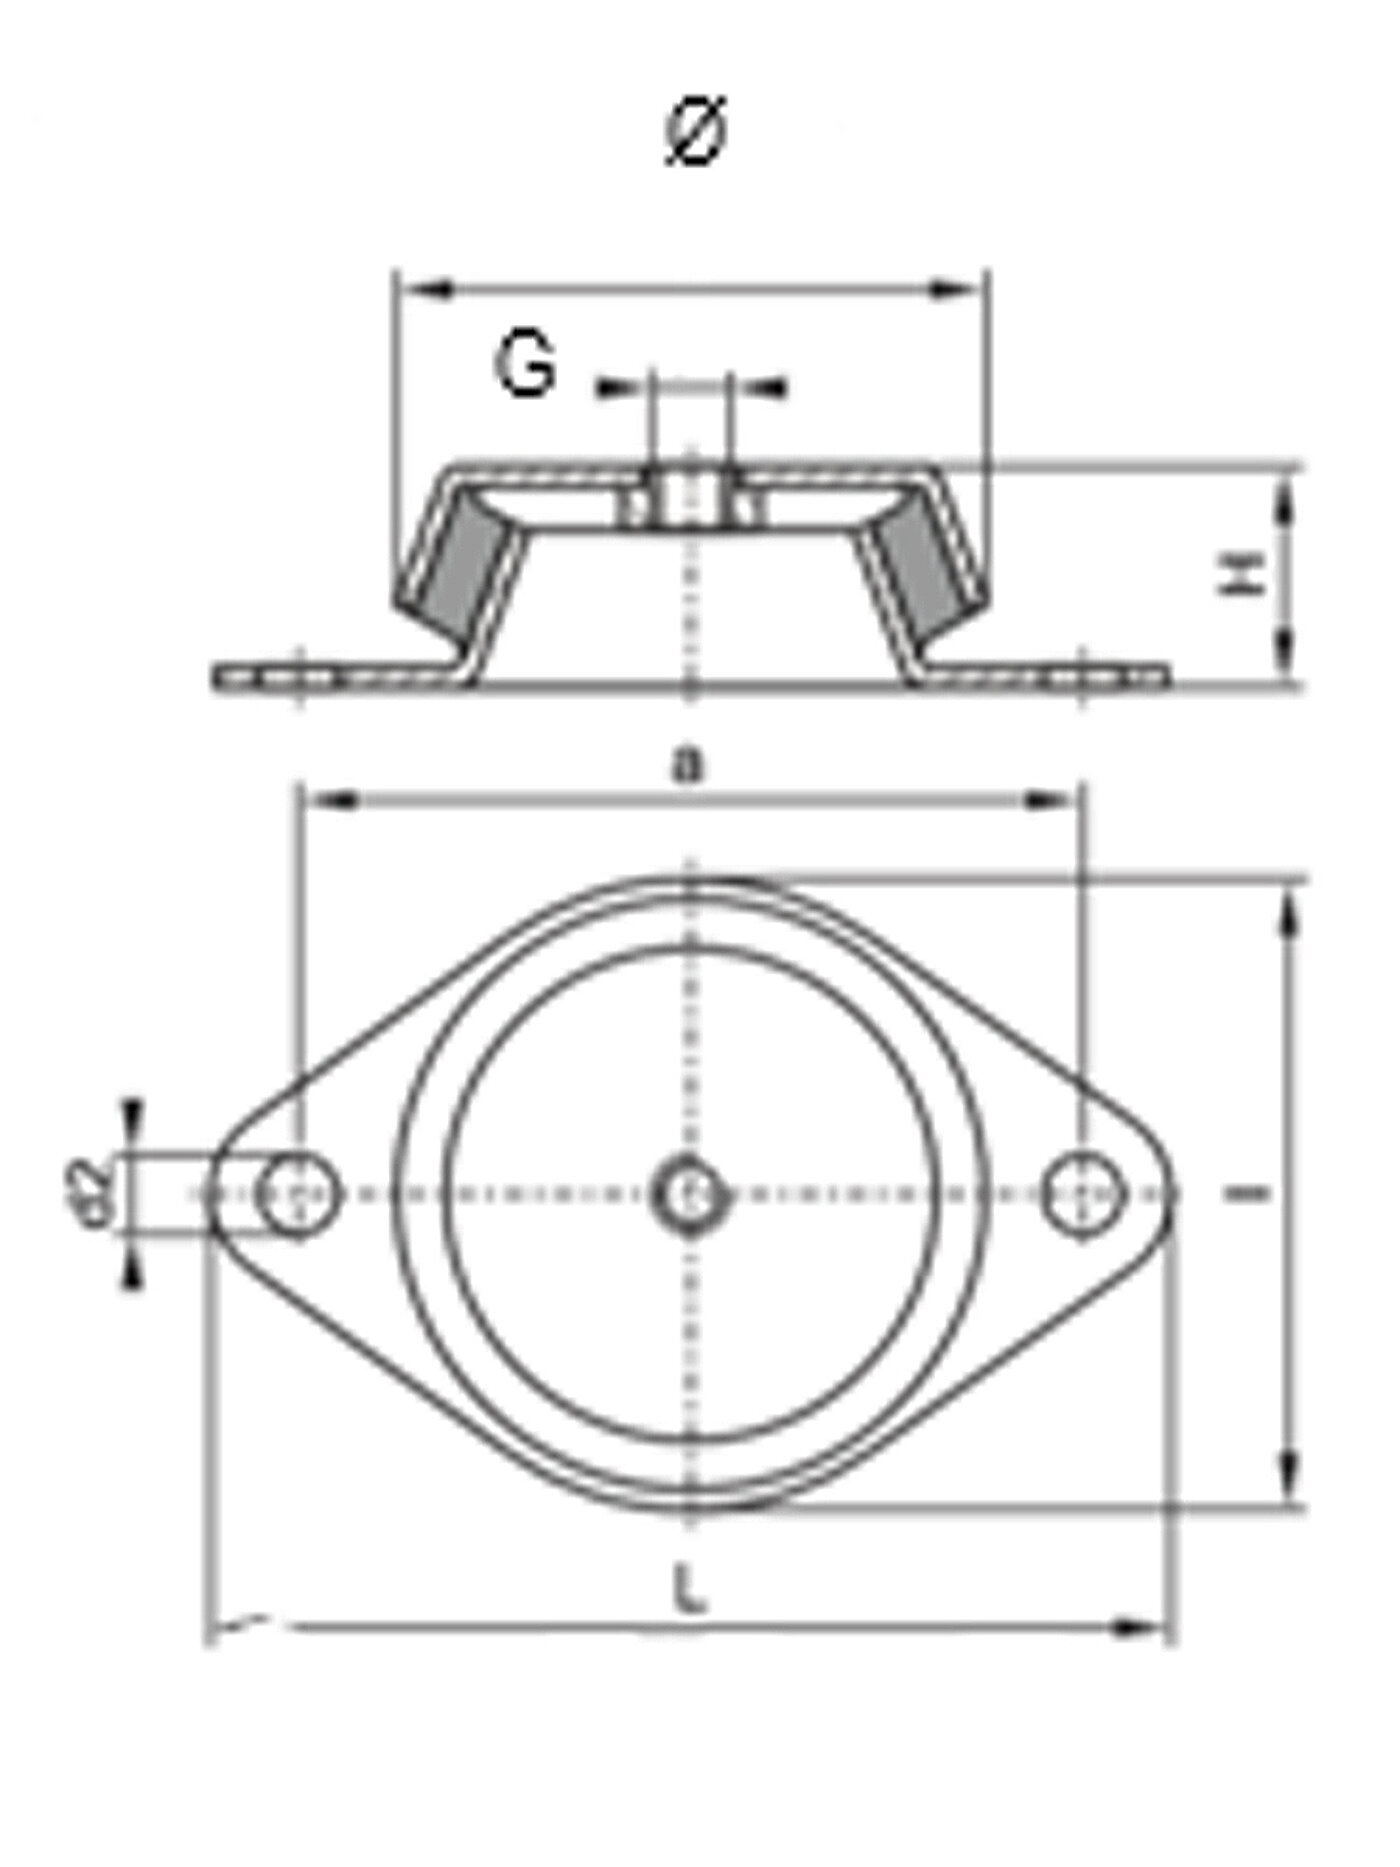 schematische Zeichnung eines Schwingungsdämpfers aus Metall mit rautenförmiger Bodenplatte, zwei Rundlöchern zur Bodenbefestigung, einer glockenförmigen Metallkappe mit Einschraubgewinde und dazwischen einvulkanisiertem Gummi in der Seitenansicht und Draufsicht